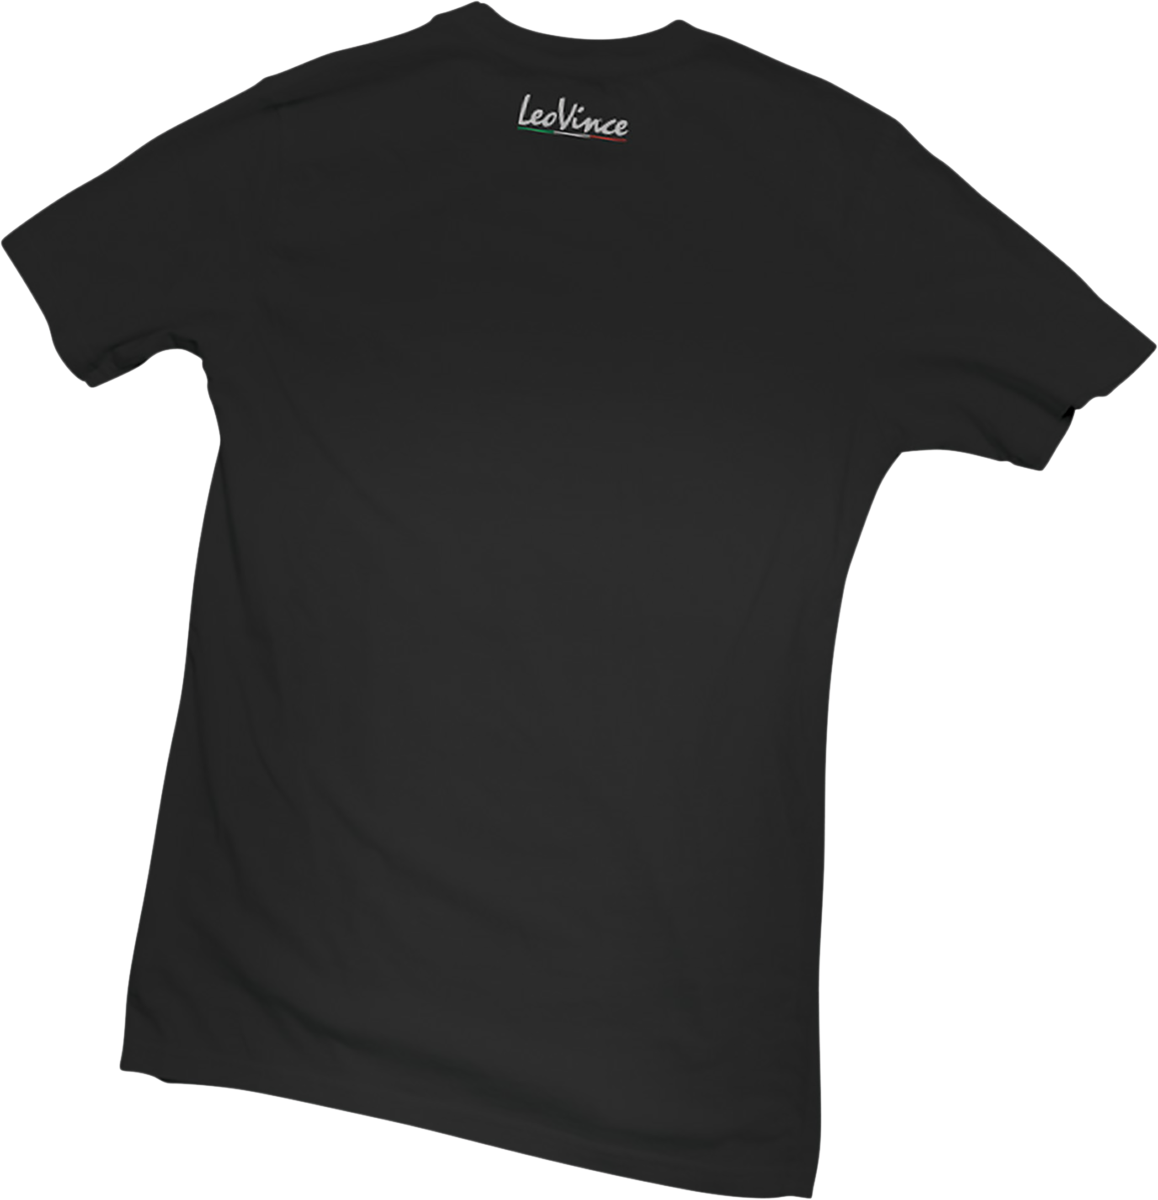 LEOVINCE Leo Vince T-Shirt - Black - Large 417908L